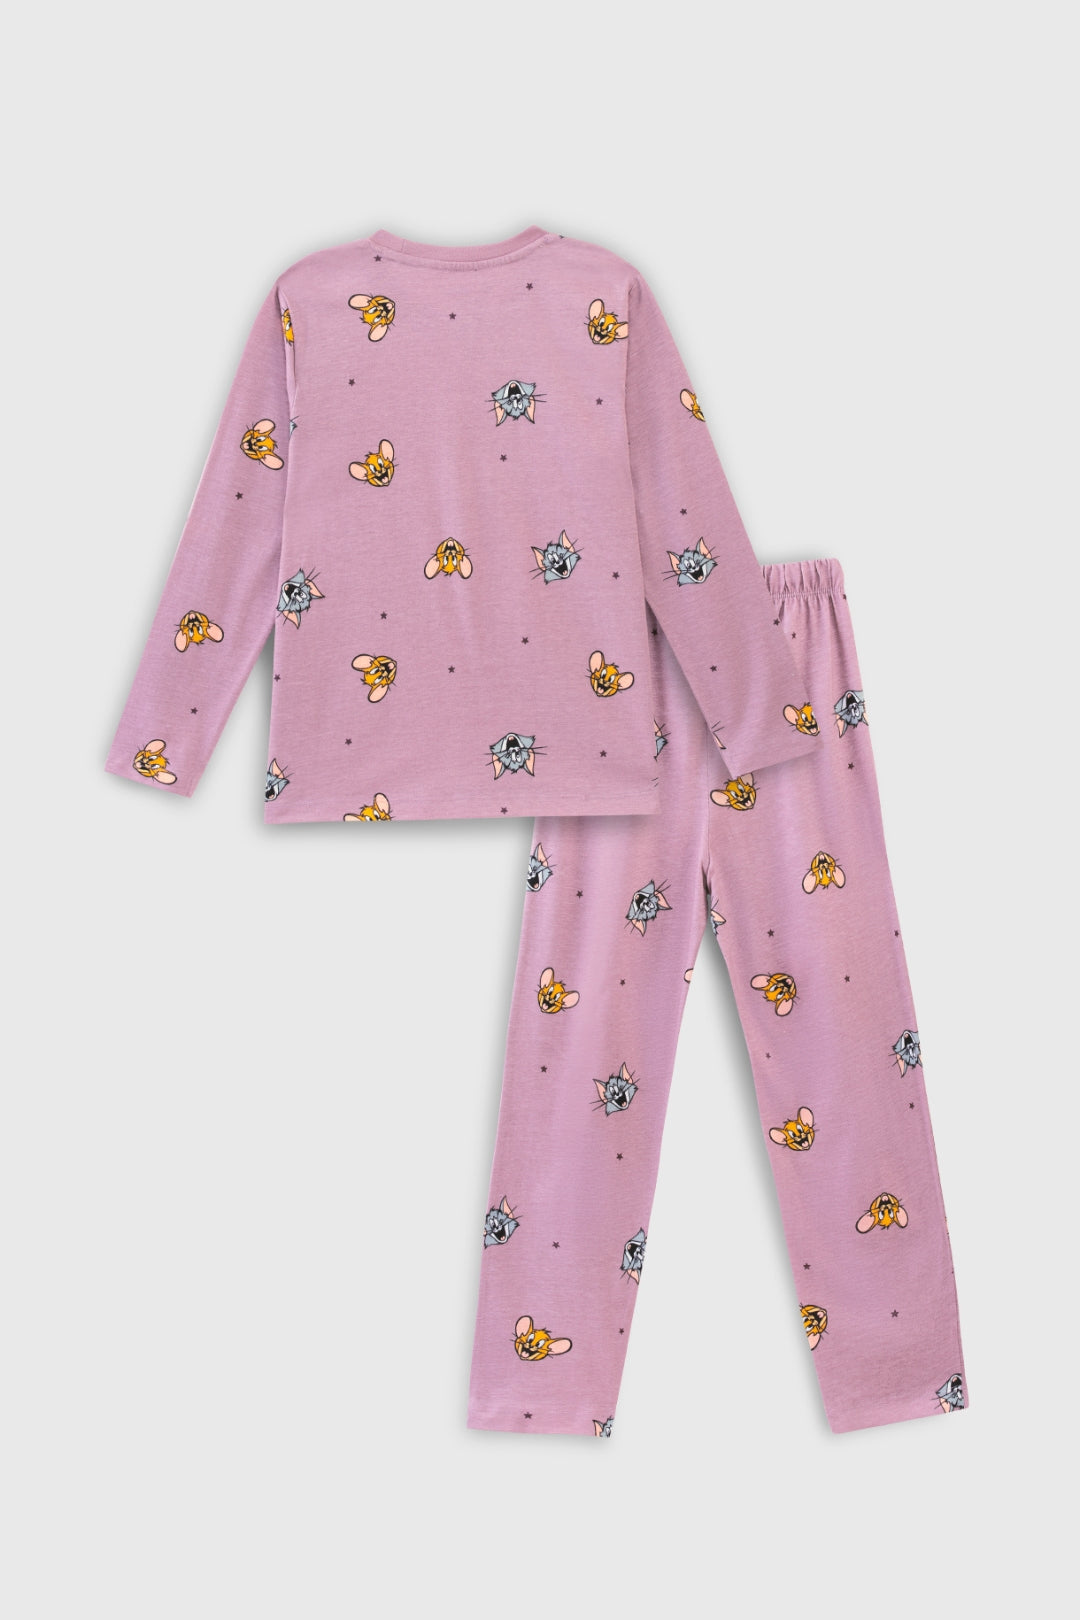 Tom and Jerry Classic Purple Pajama Set